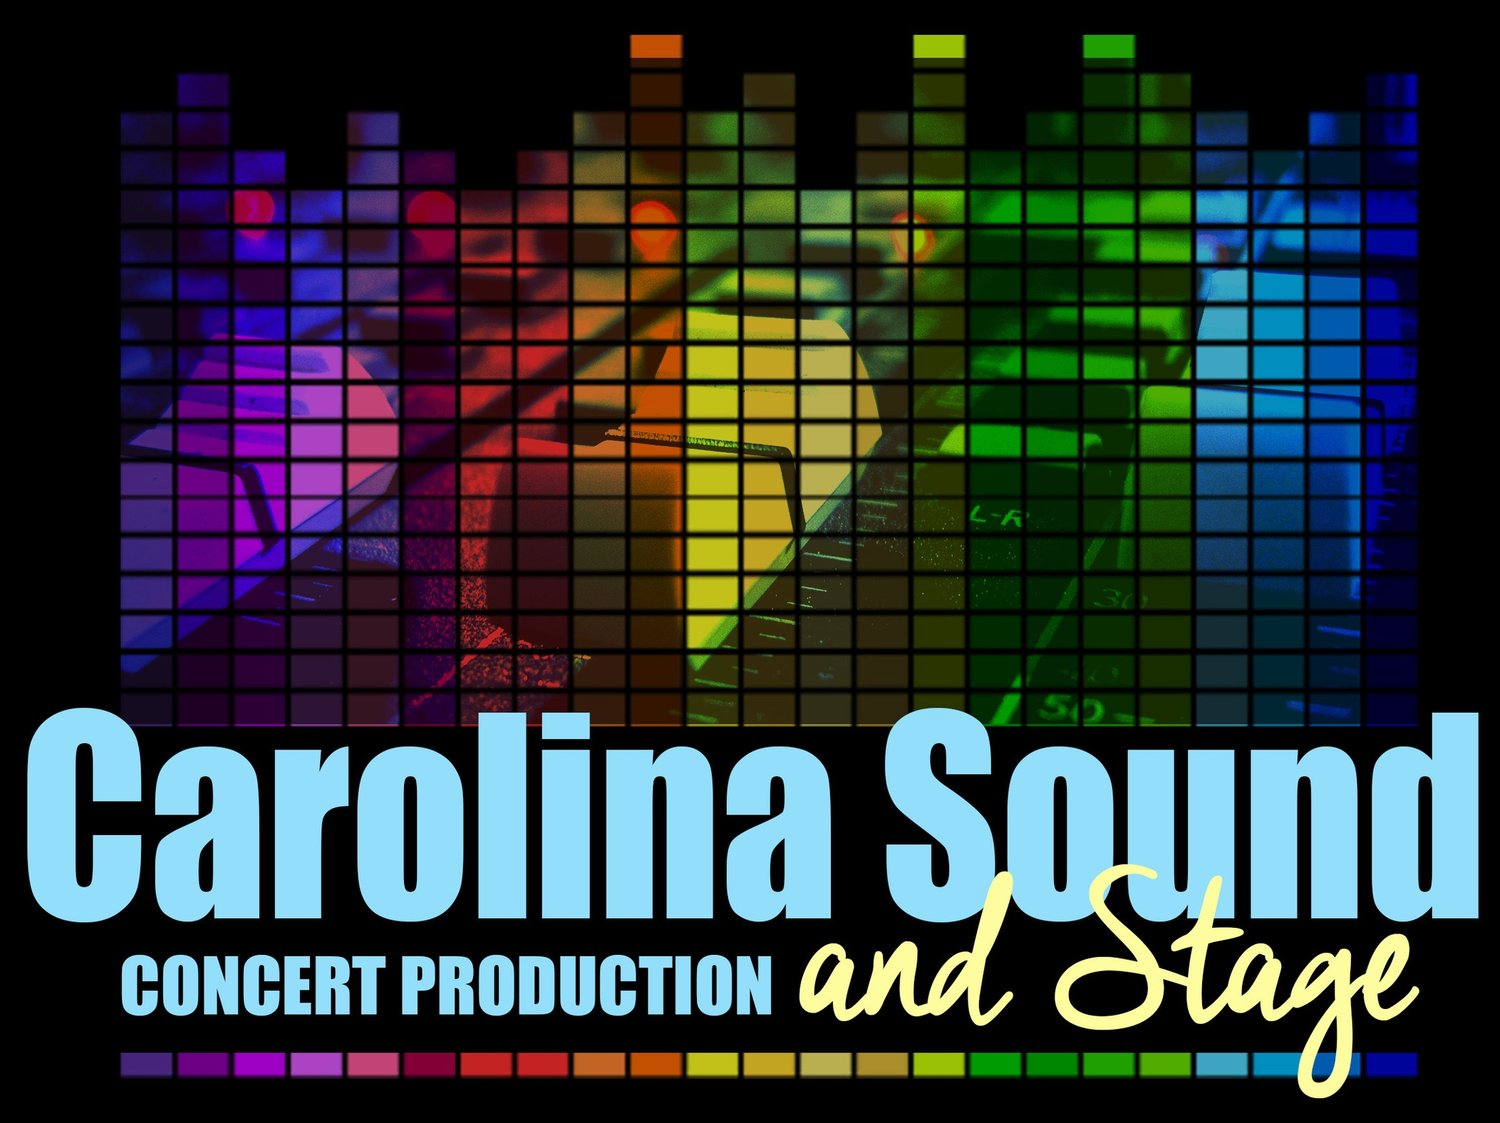 Carolina Sound and Stage